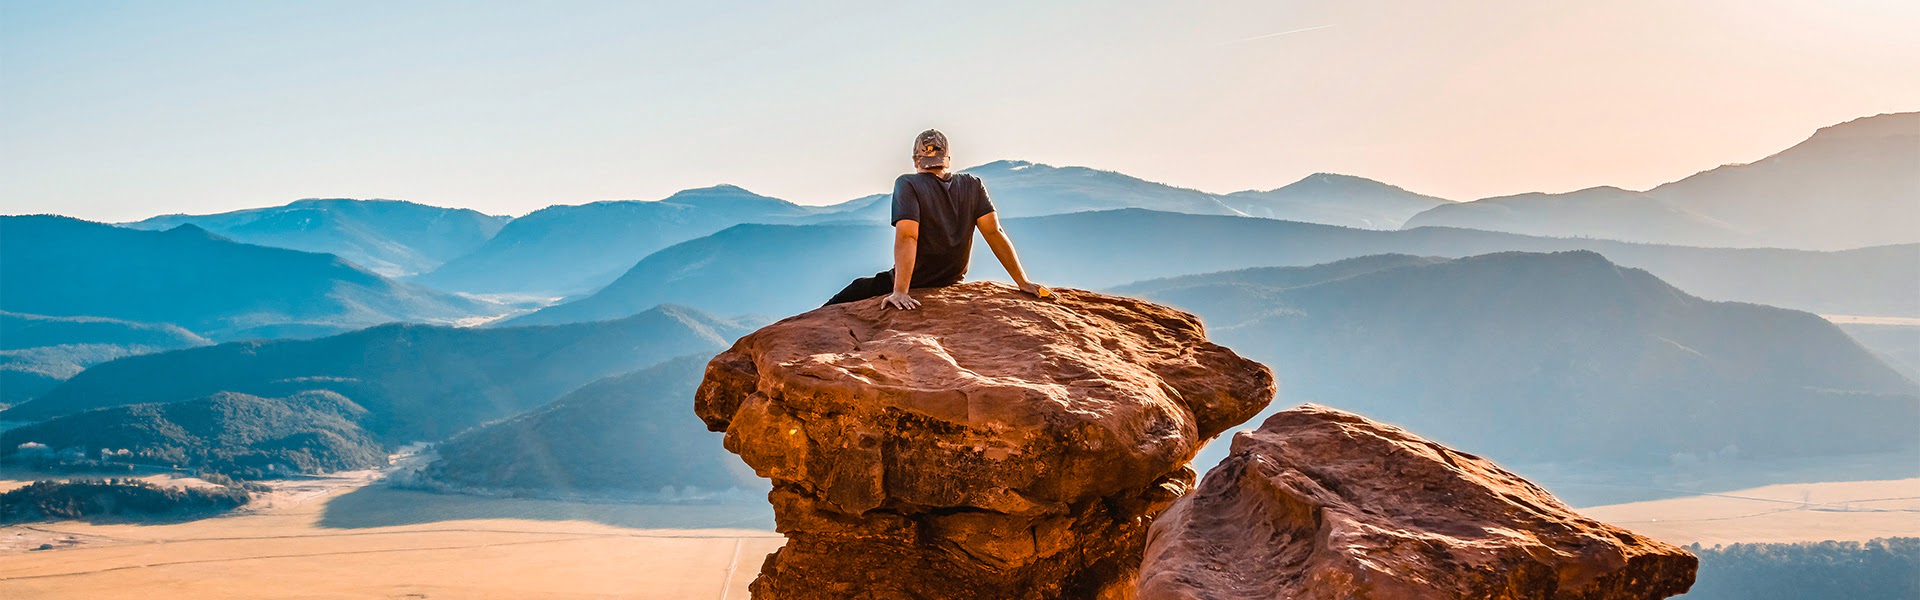 Mann sitzt auf Felsen, in die Ferne blickend |  Unsplash, Jamie Fenn / Chamleon